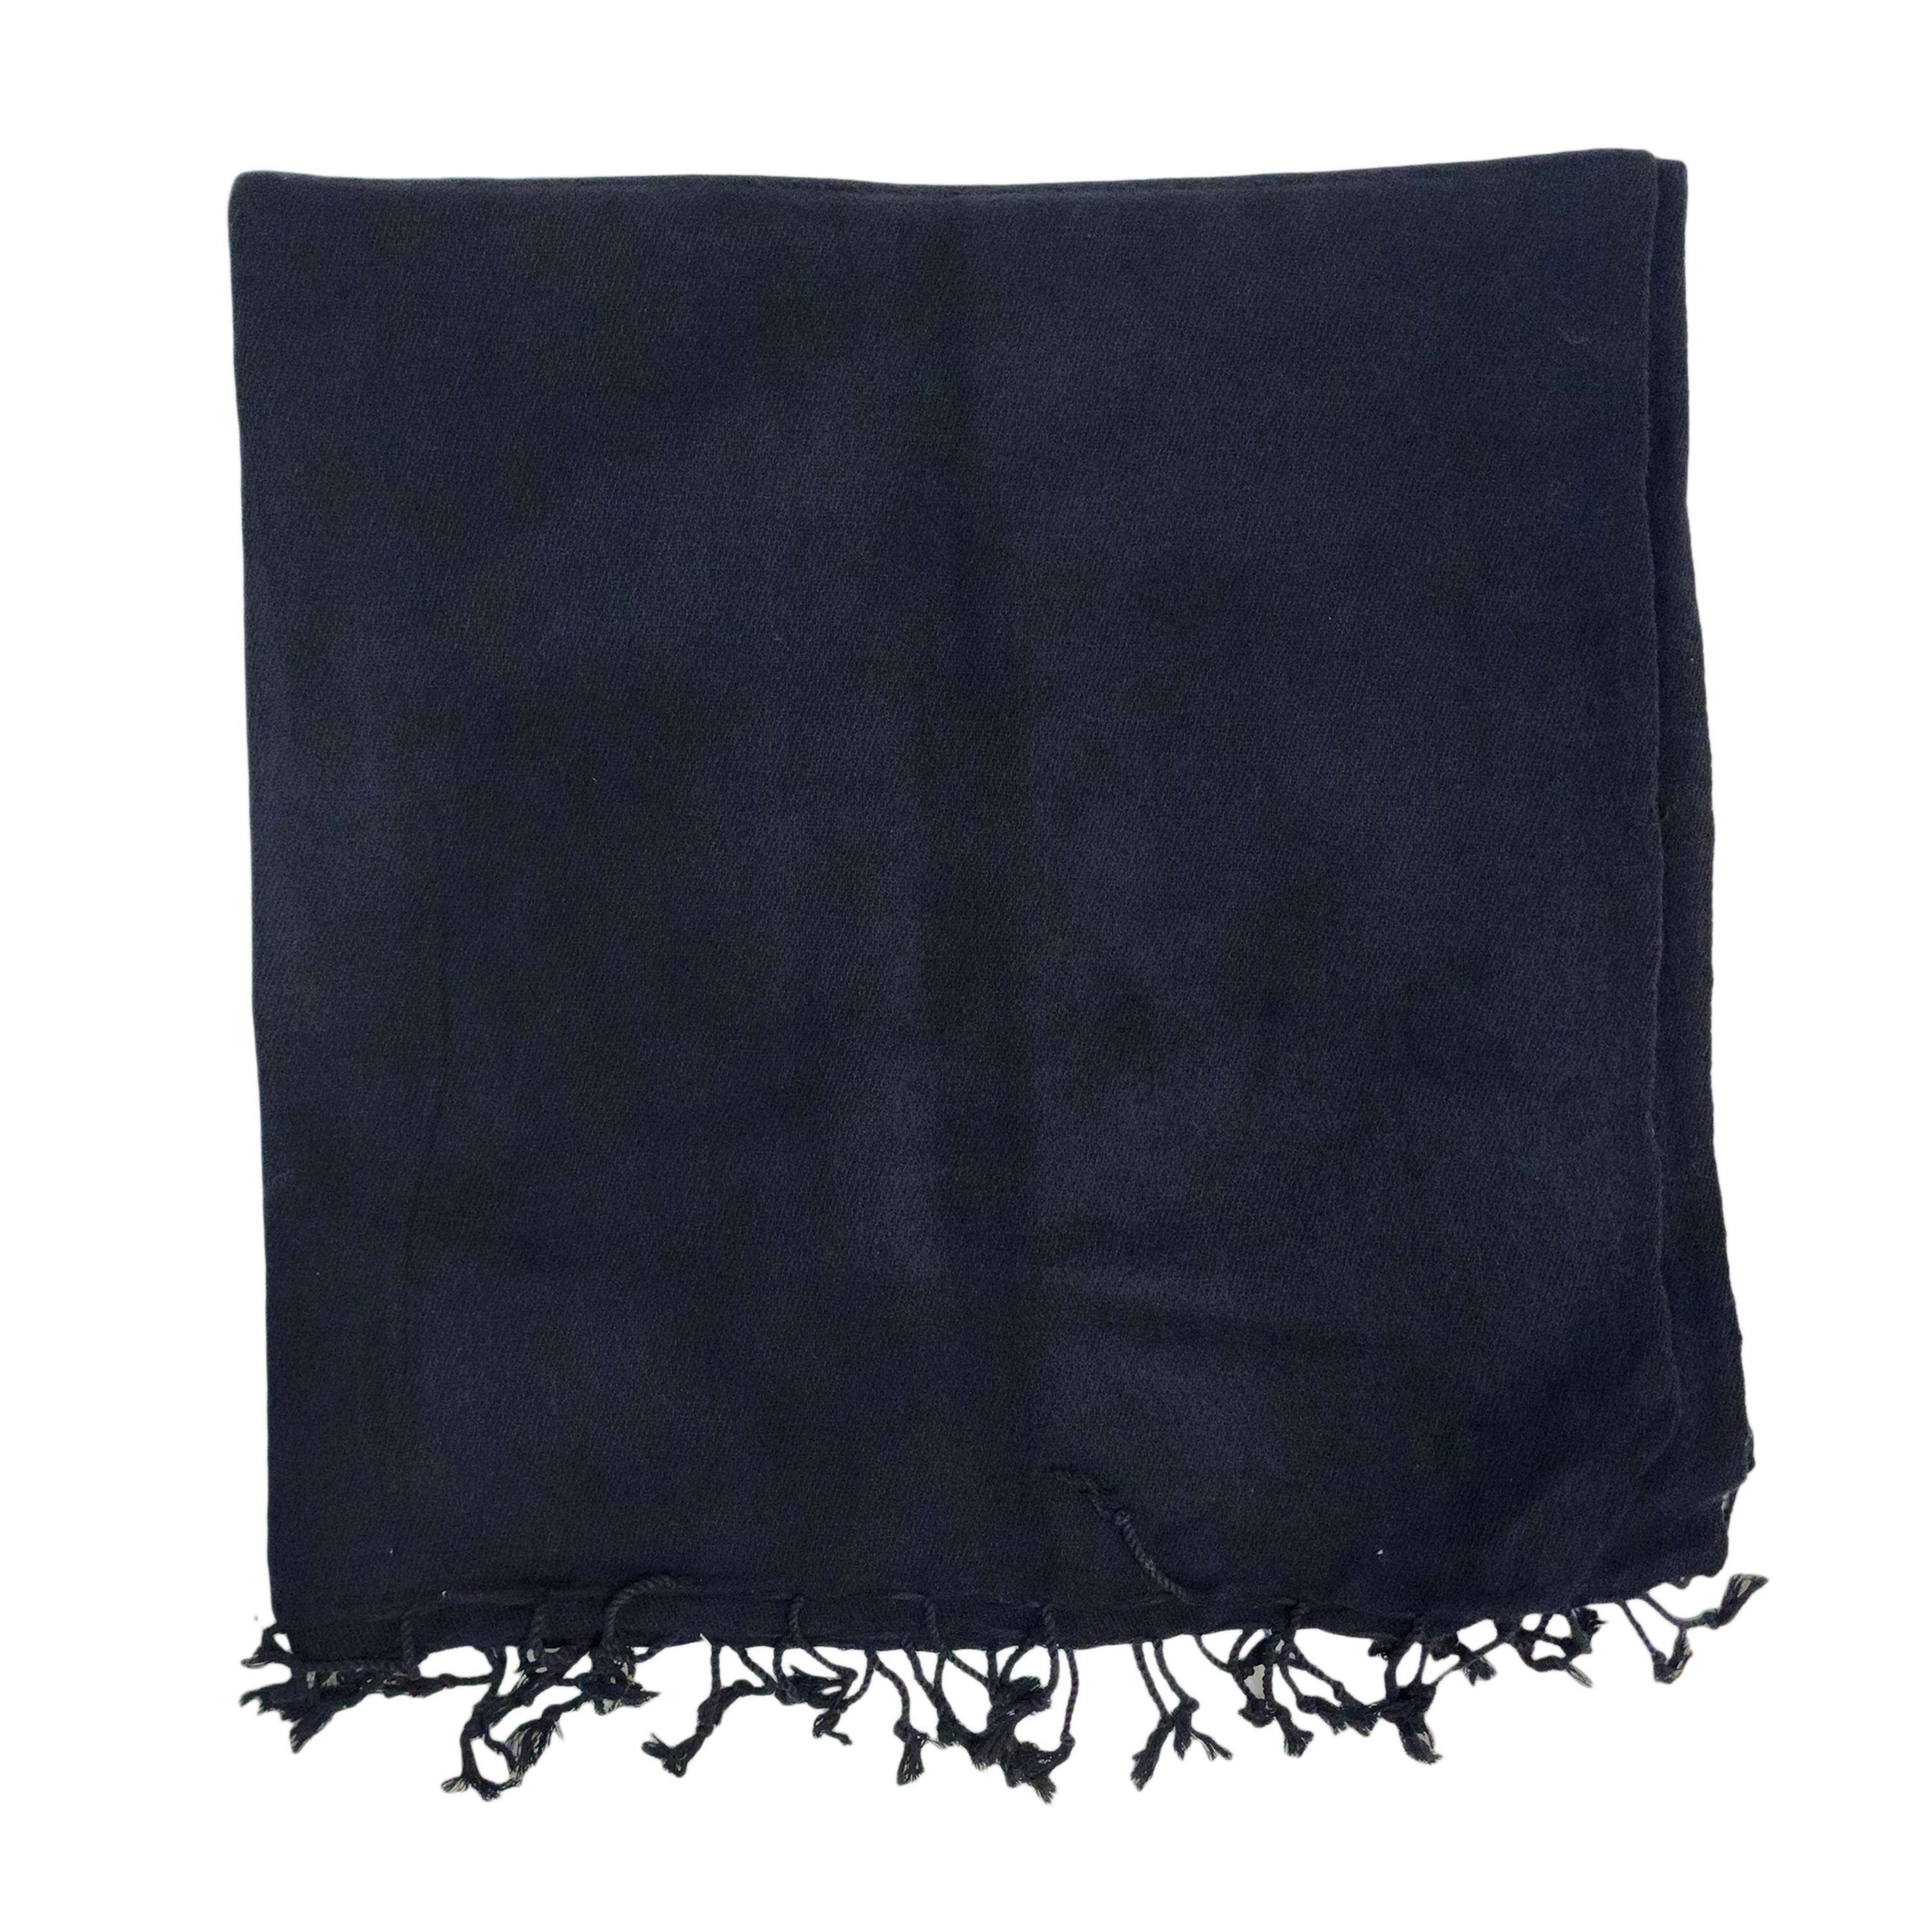 Yak Wool Blanket, Nepali Acrylic Hand Loom Blanket, Color charcoal Gray